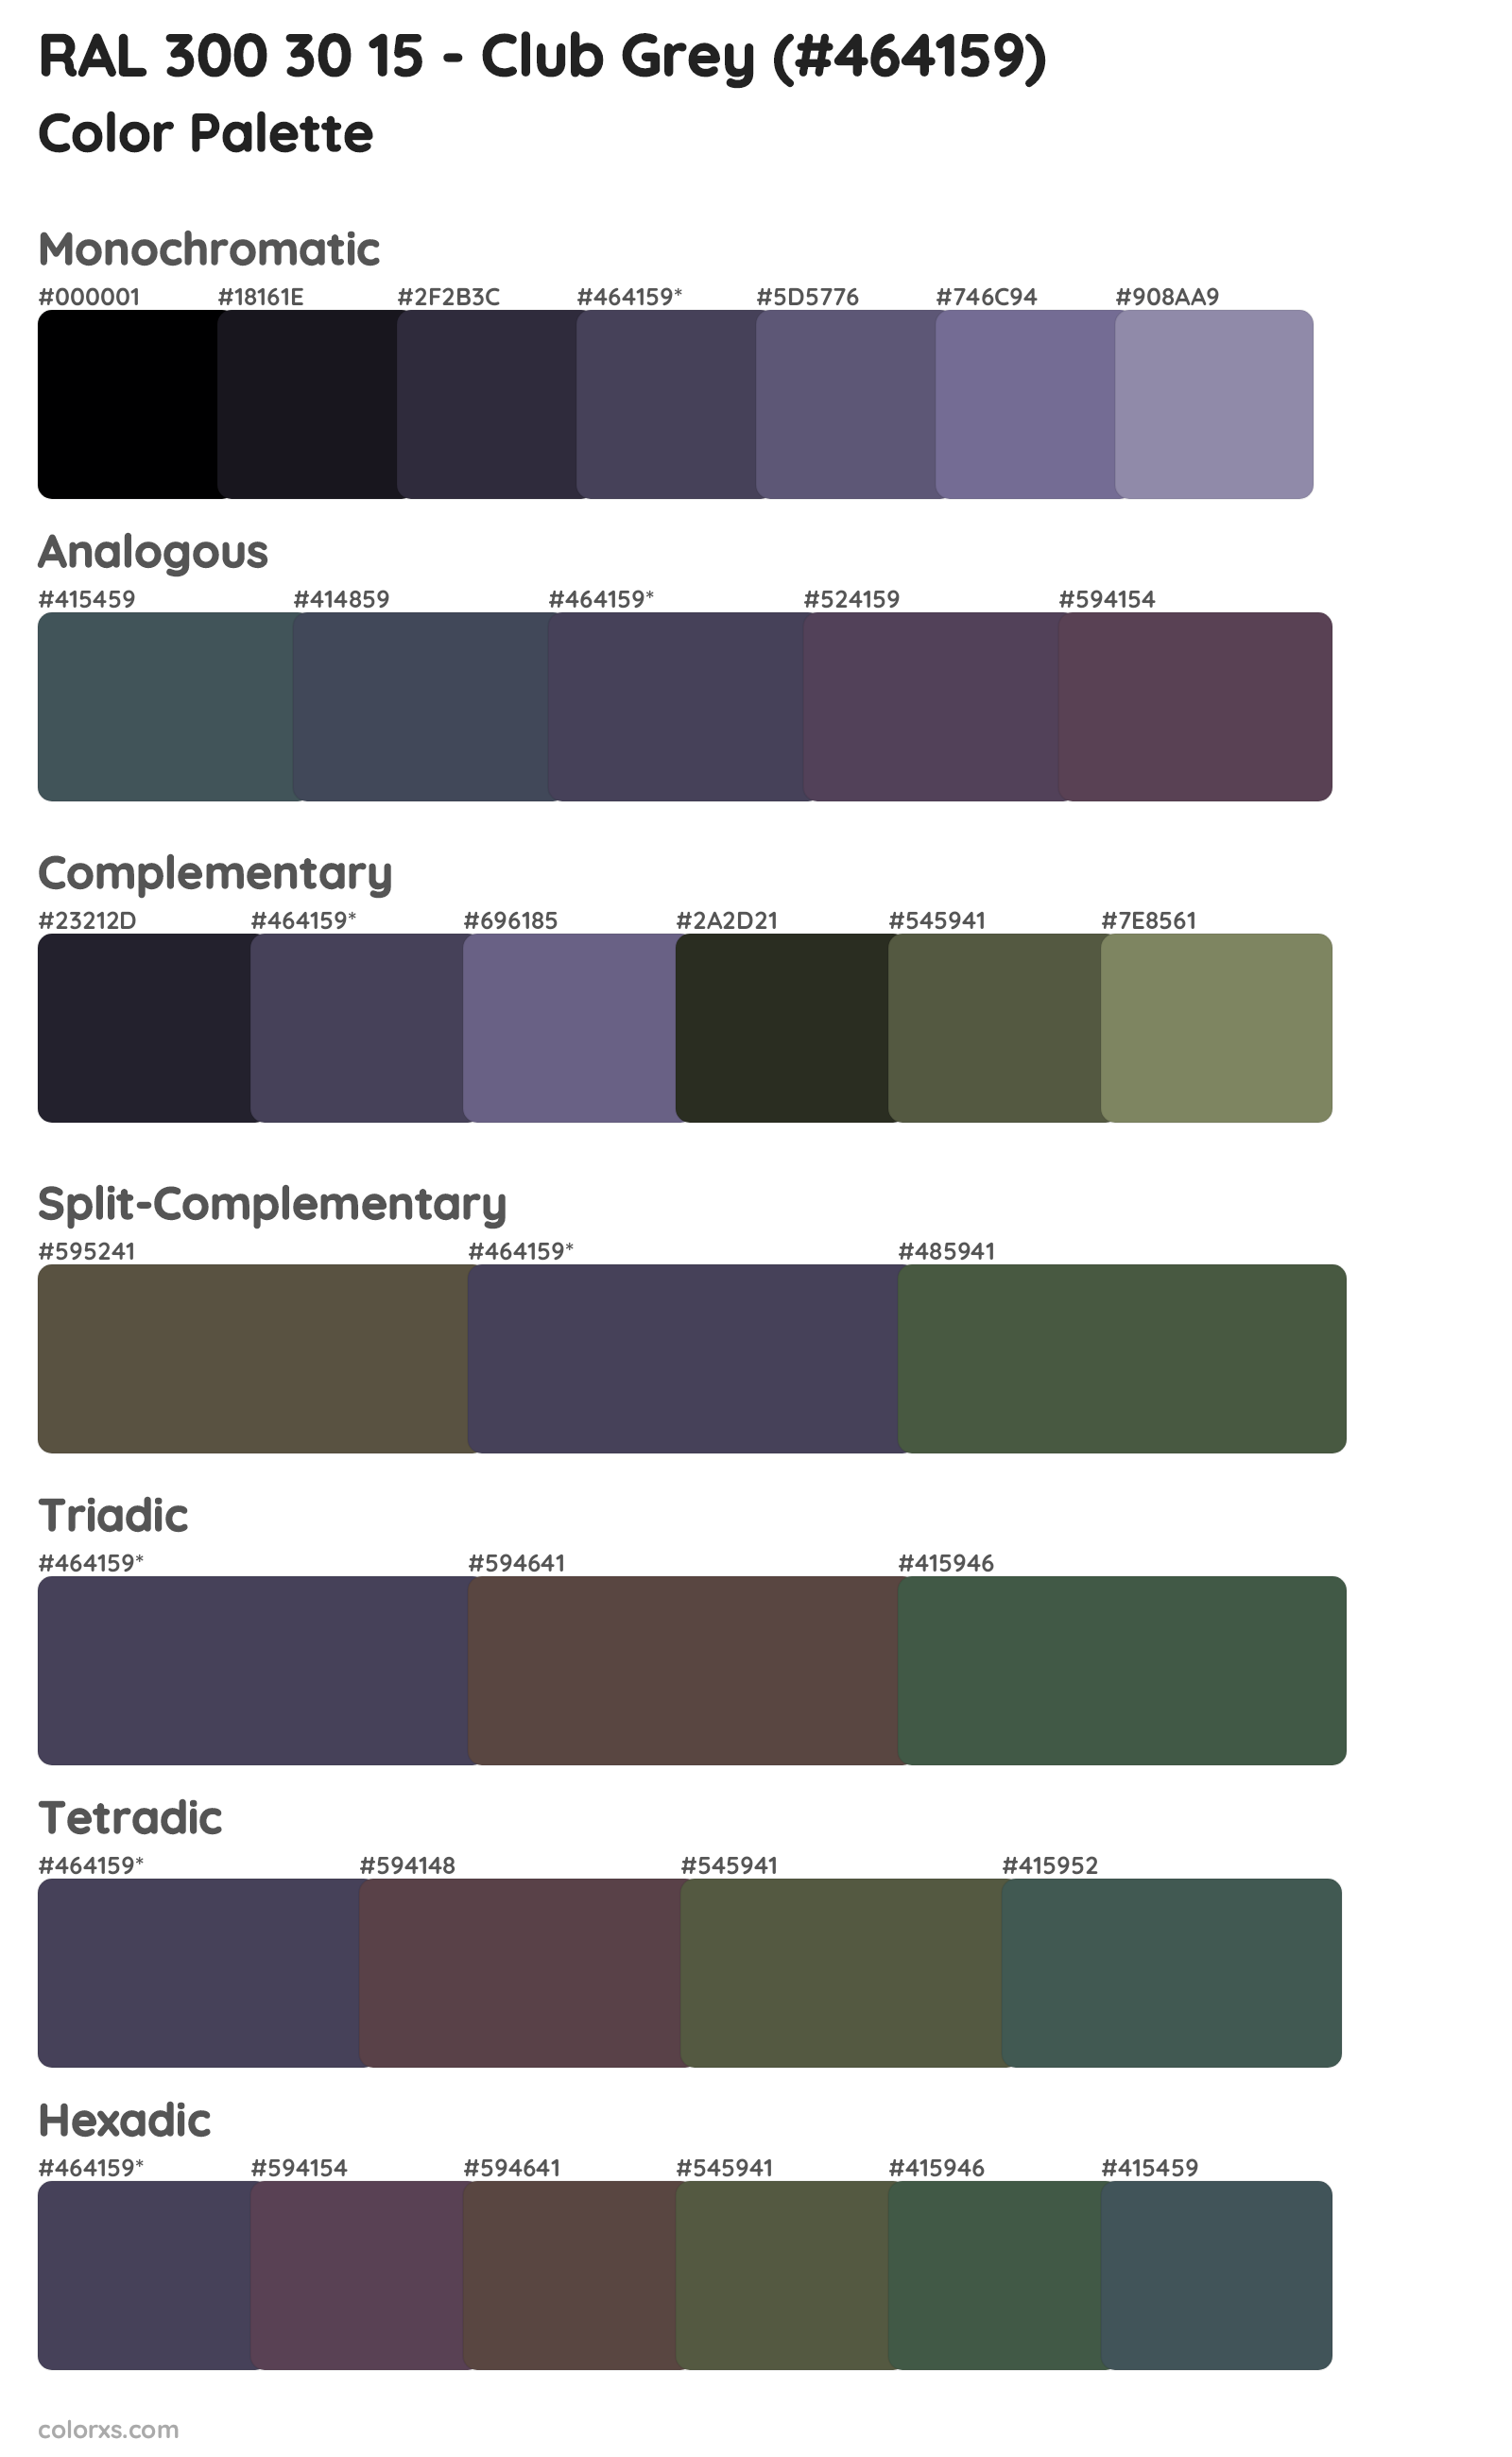 RAL 300 30 15 - Club Grey Color Scheme Palettes